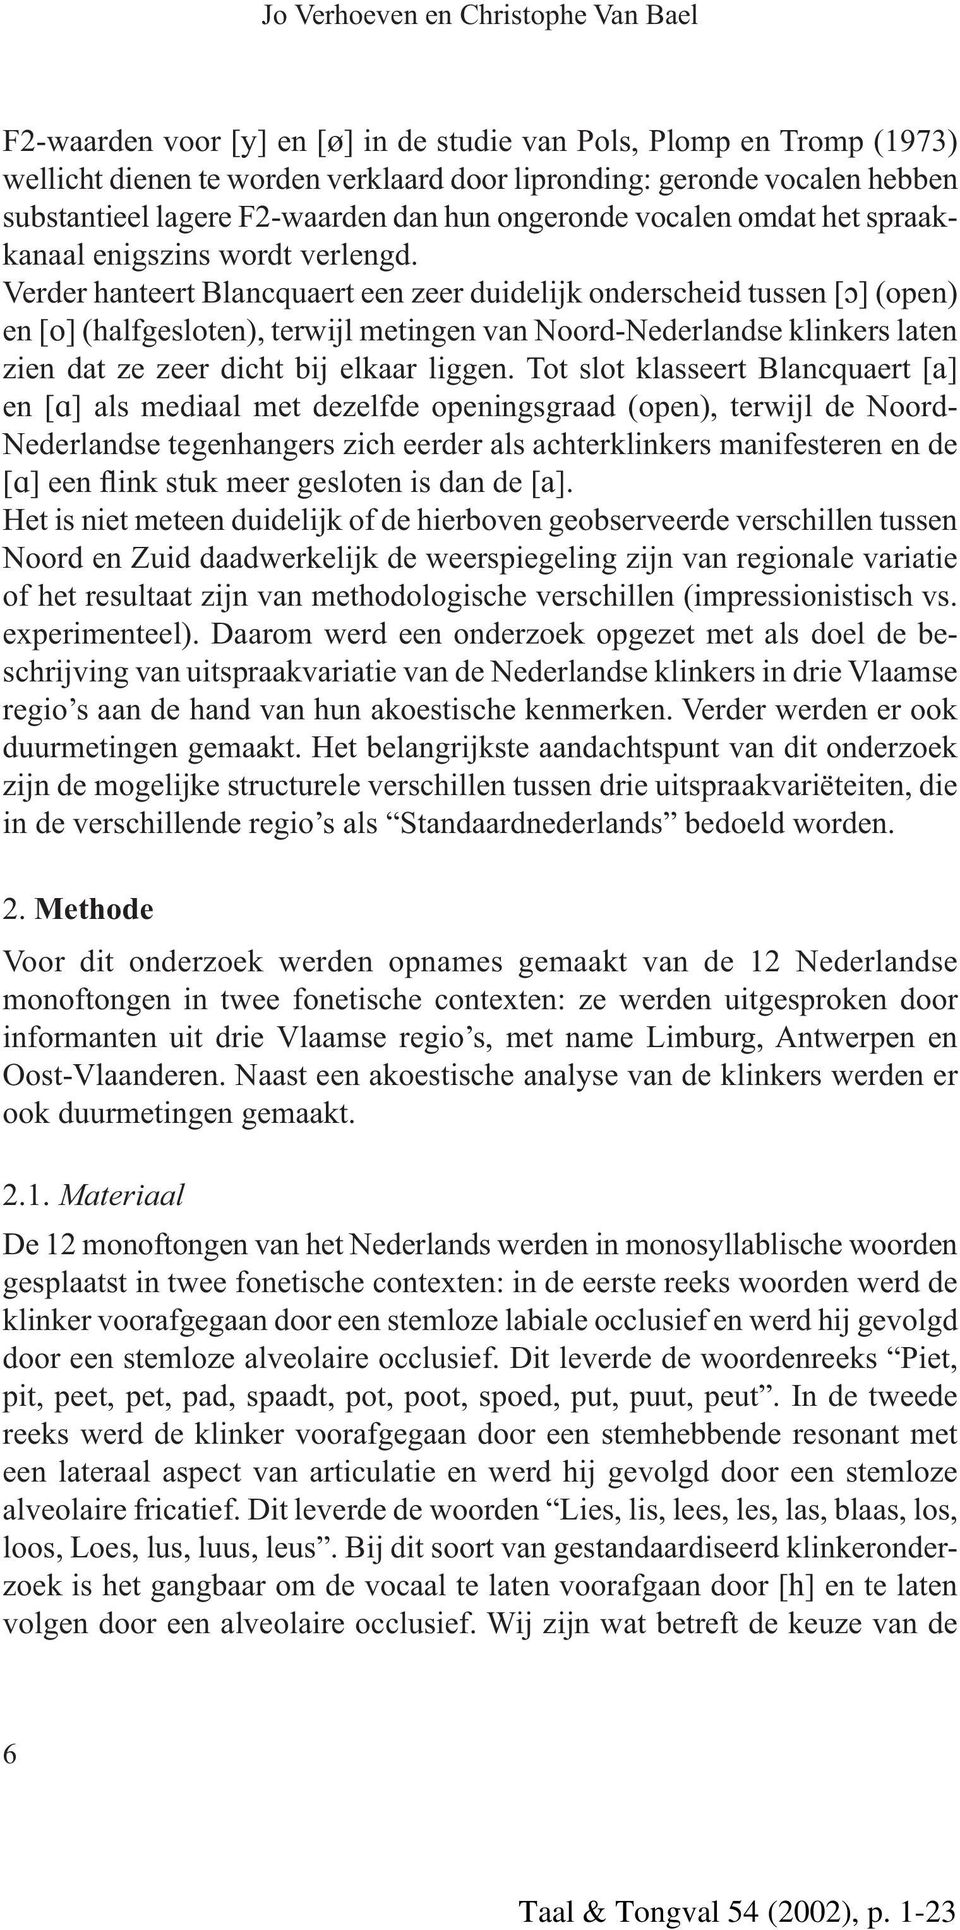 Verder hanteert Blancquaert een zeer duidelijk onderscheid tussen [ ] (open) en [o] (halfgesloten), terwijl metingen van Noord-Nederlandse klinkers laten zien dat ze zeer dicht bij elkaar liggen.